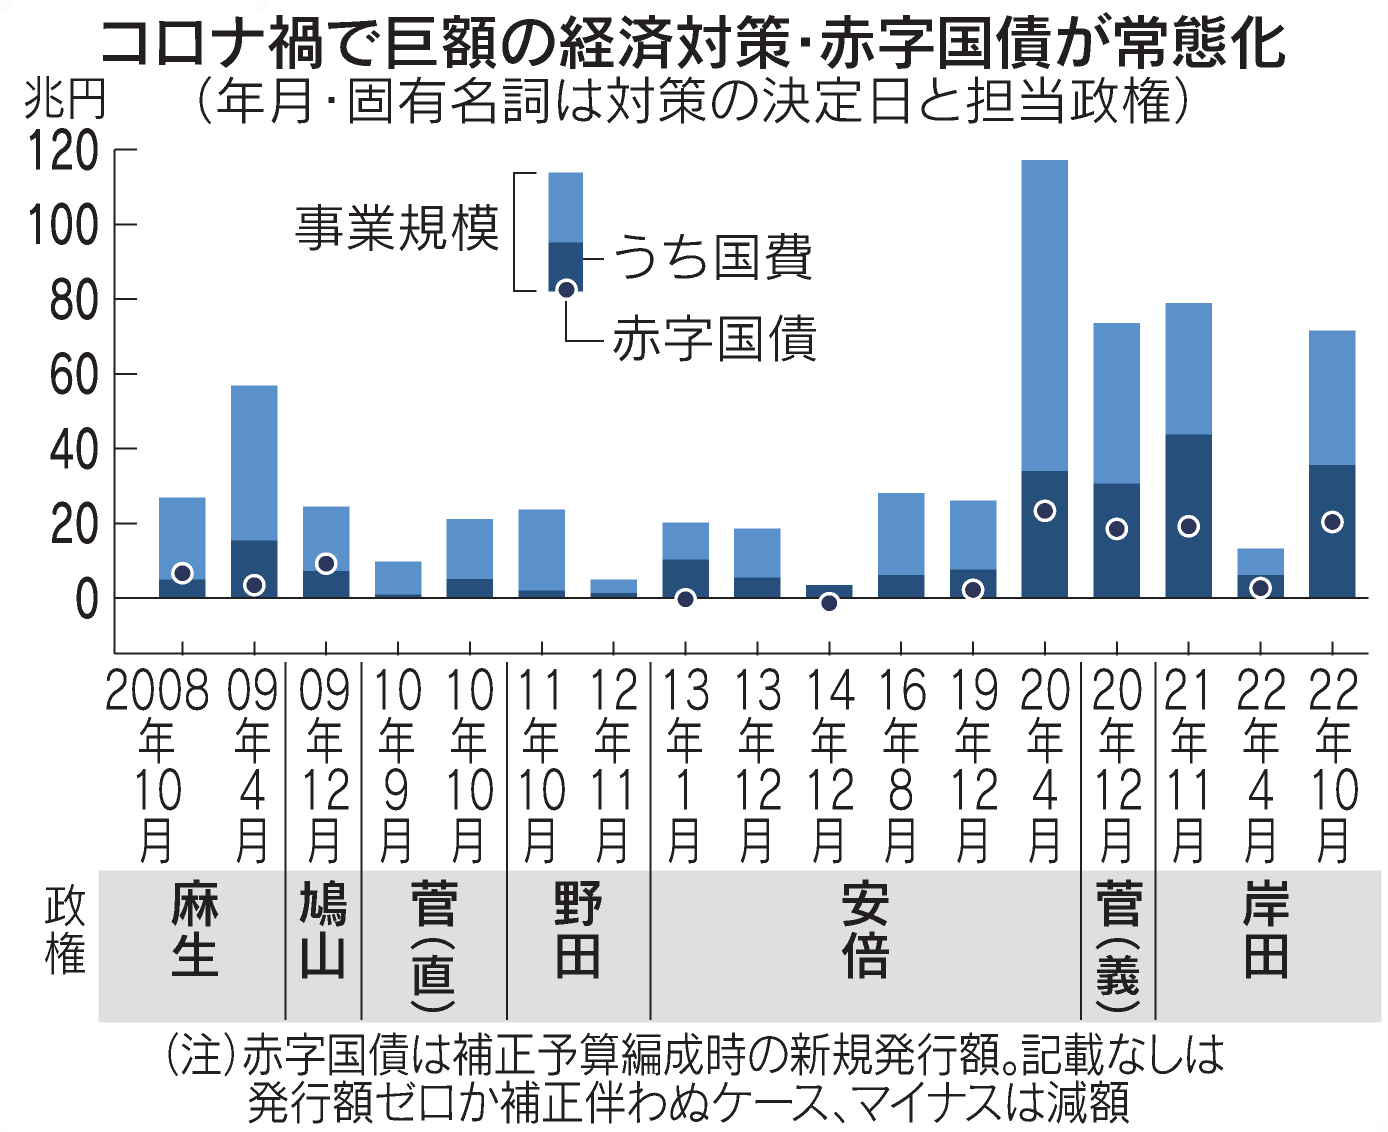 成長底上げ、企業の「減税」軸に バラマキ批判警戒 - 日本経済新聞